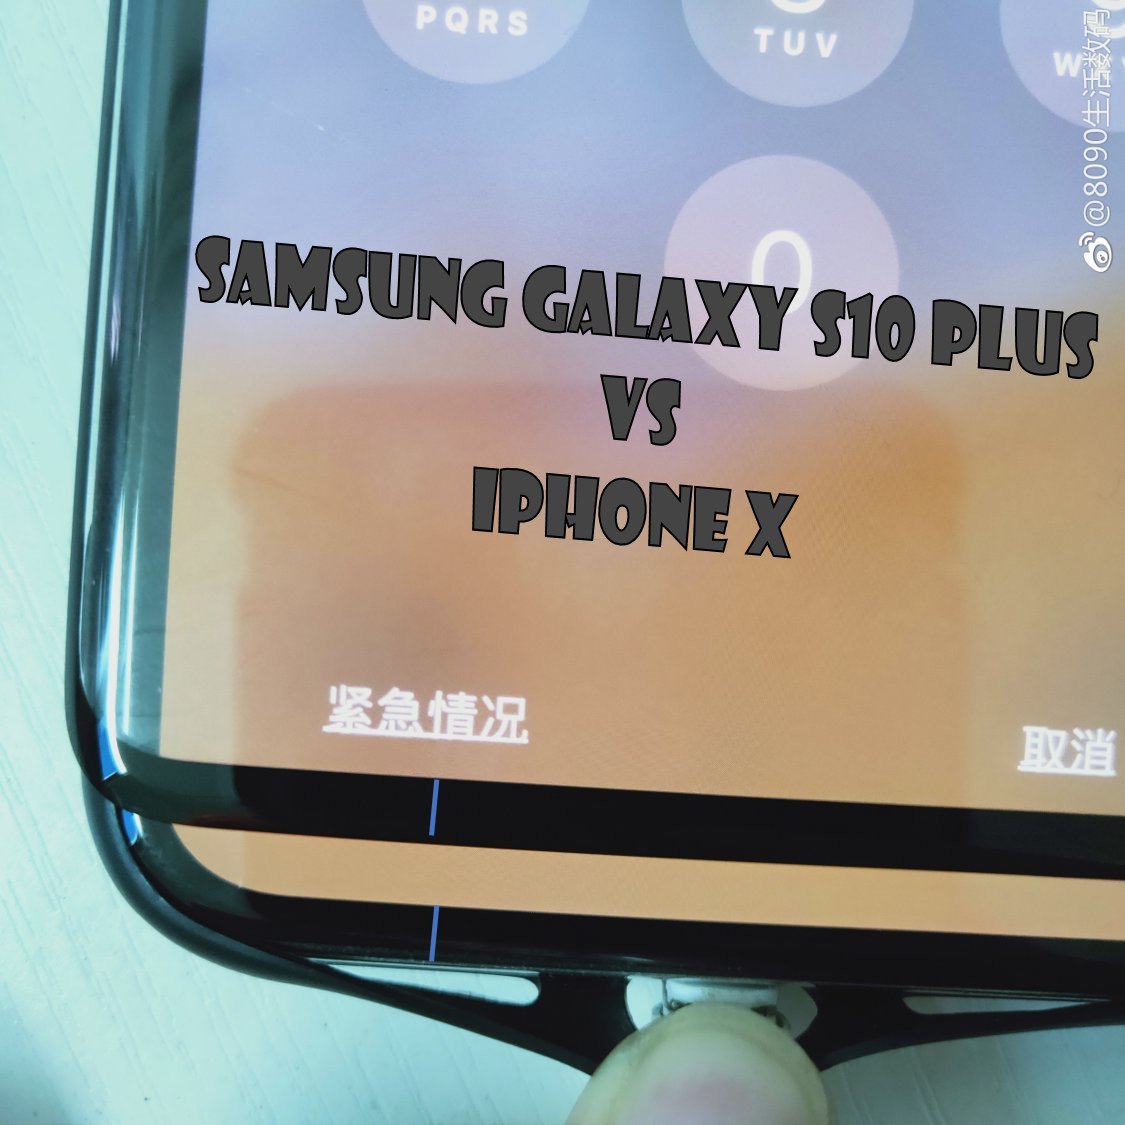 Screen cover leak confirms Samsung Galaxy S10 Plus has a small, cute chin